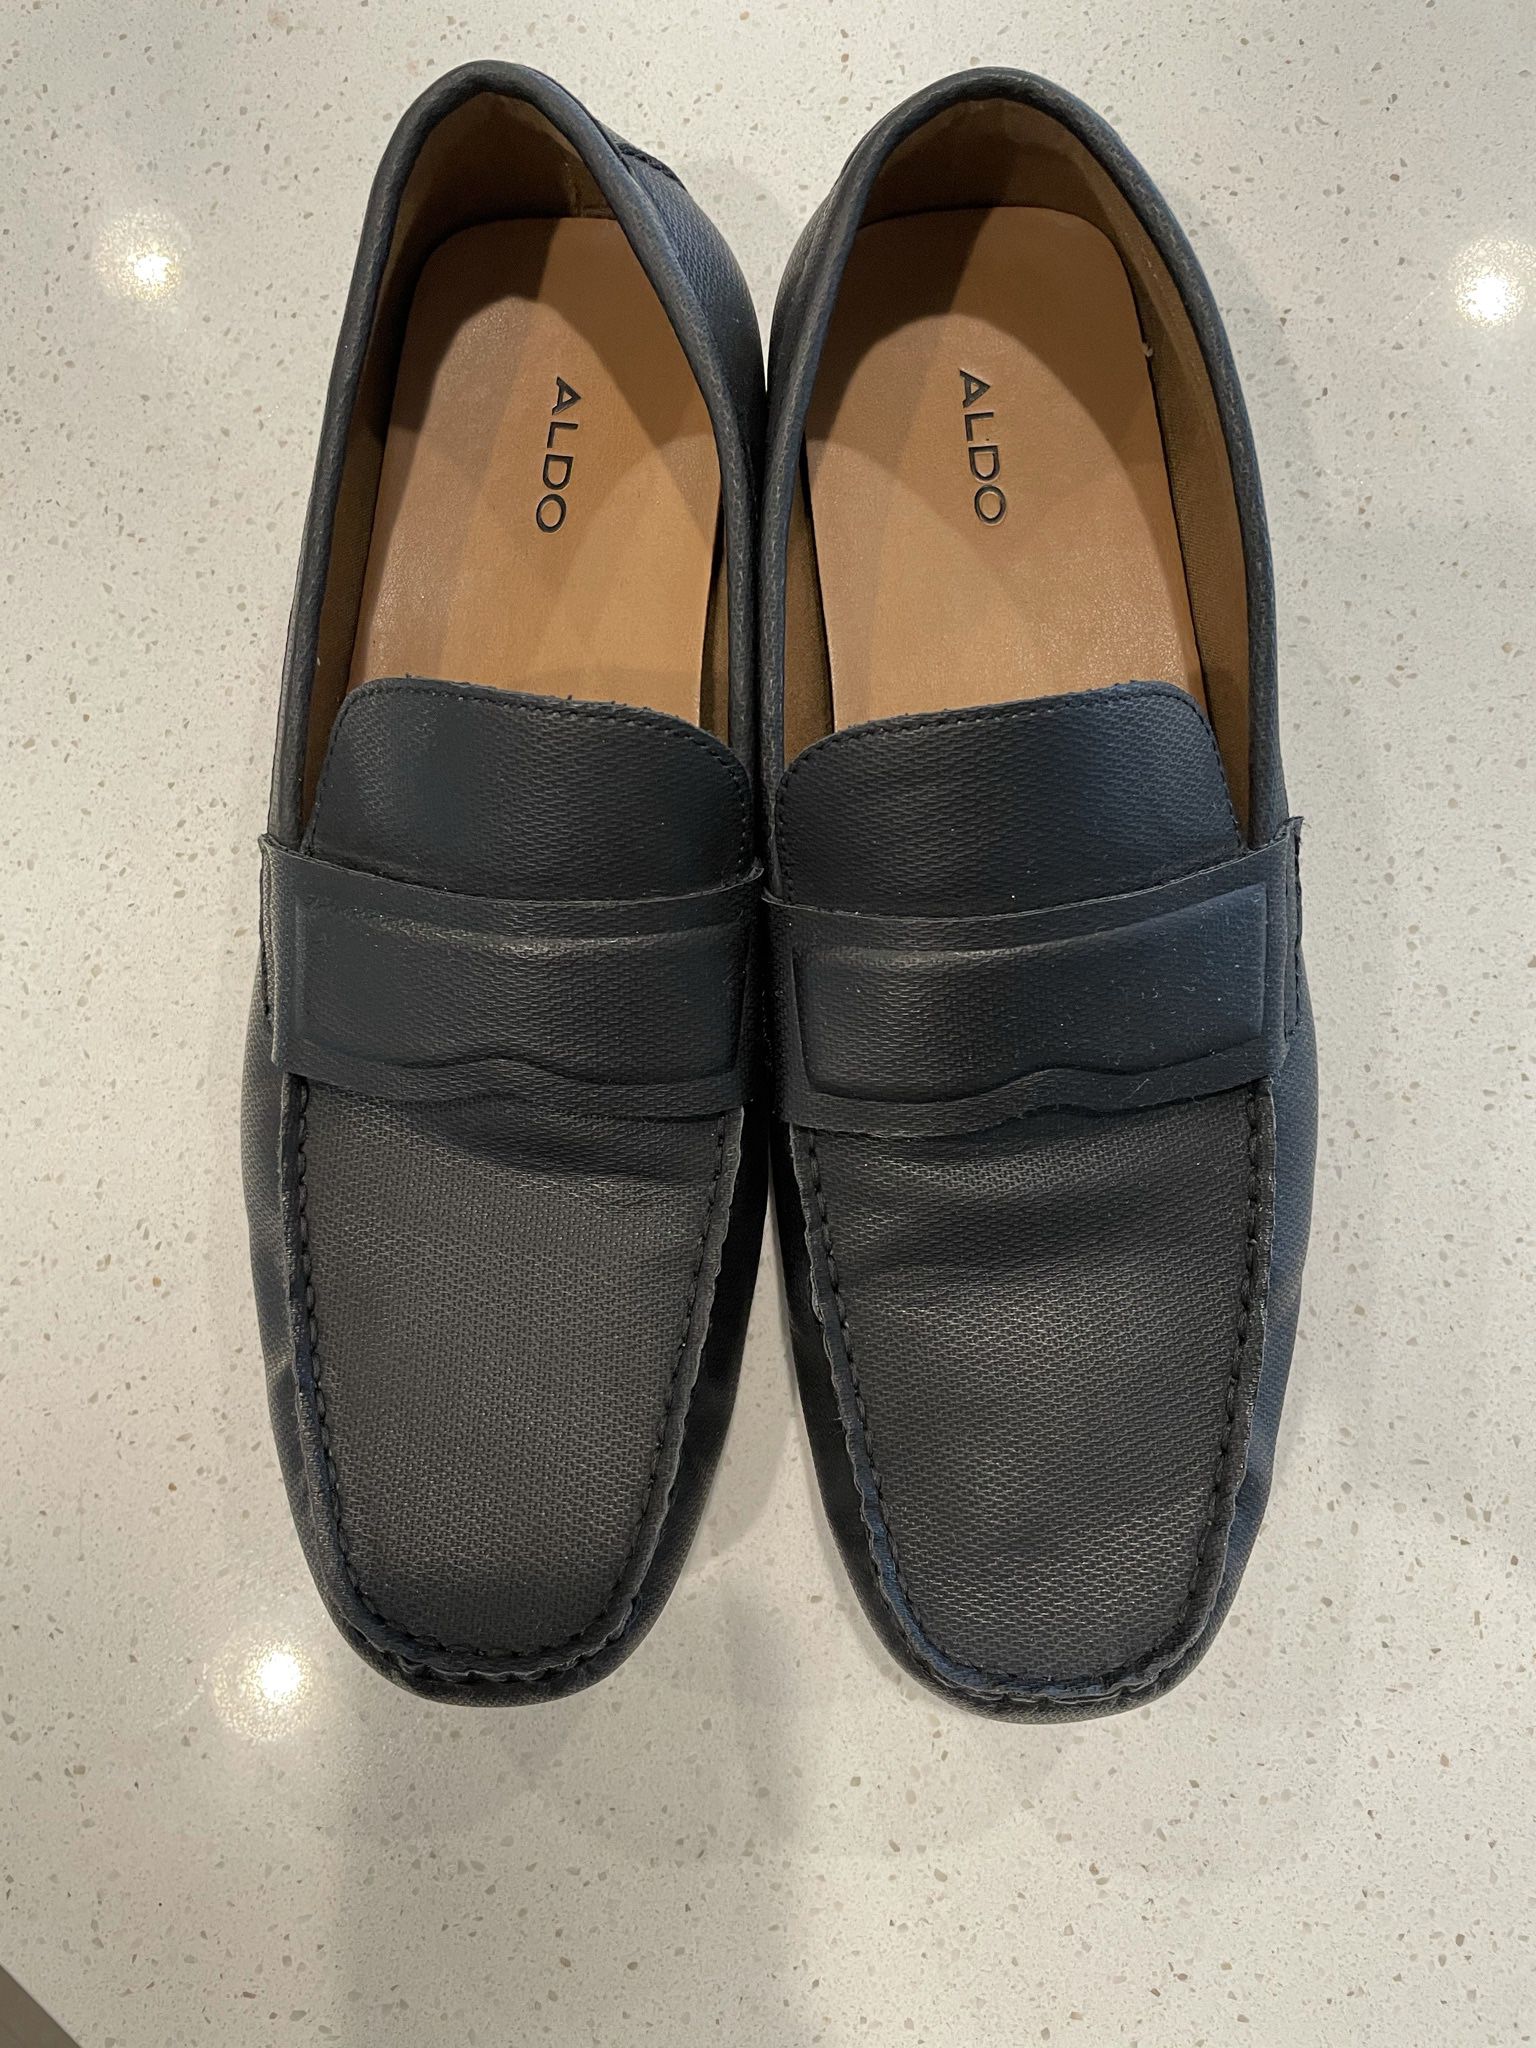 Men’s Aldo moccasin driver shoe, Slip-on. Good For Wide Ankles  Black. Size 11. 